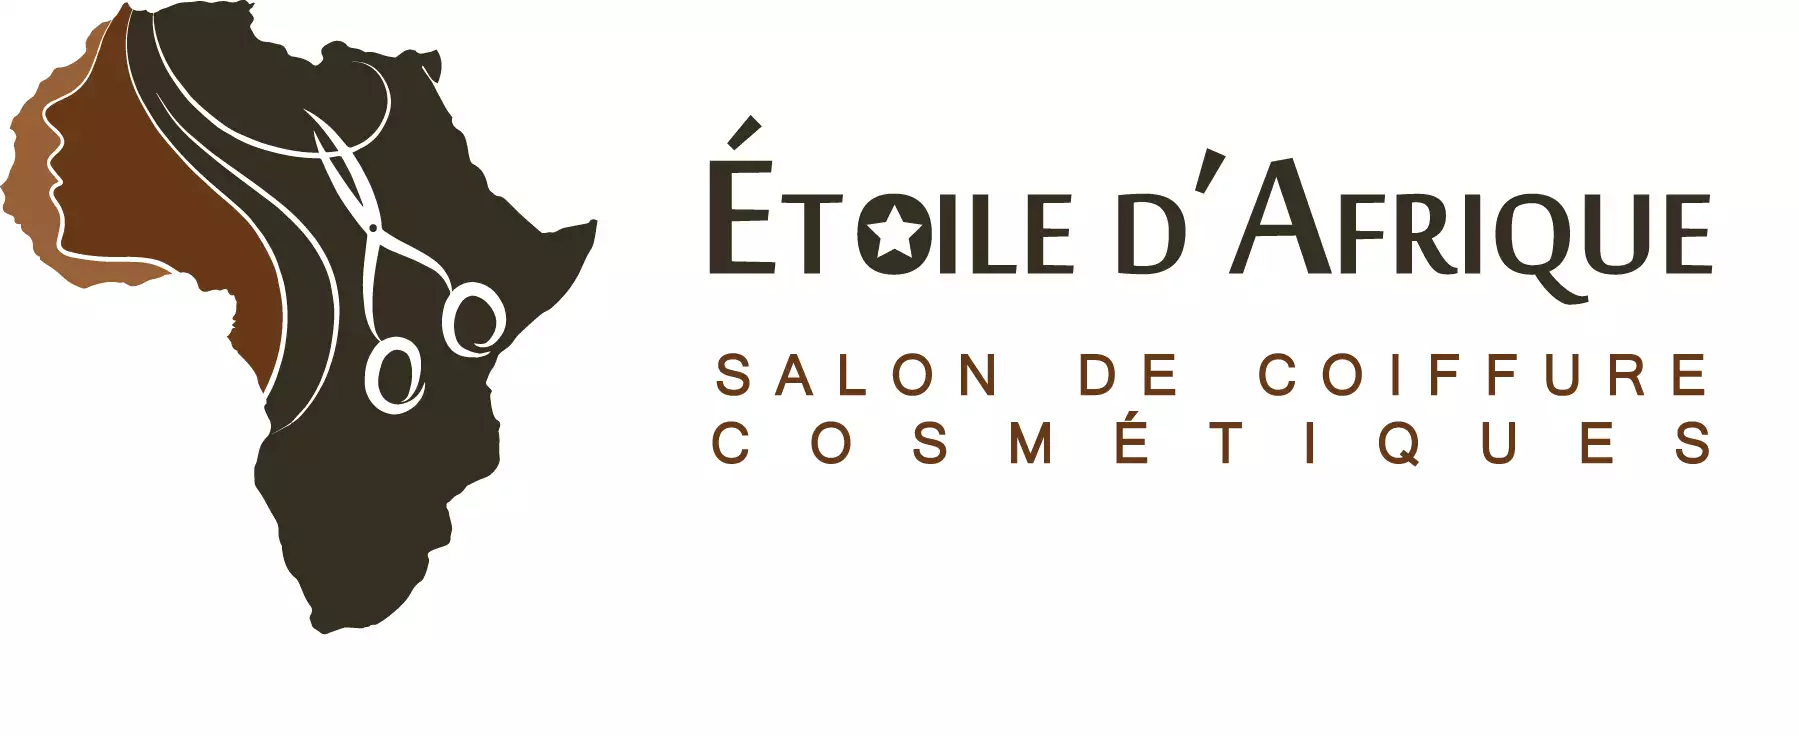 Etoile D Afrique Cosmetiques Meilleur Salon De Coiffure Antony